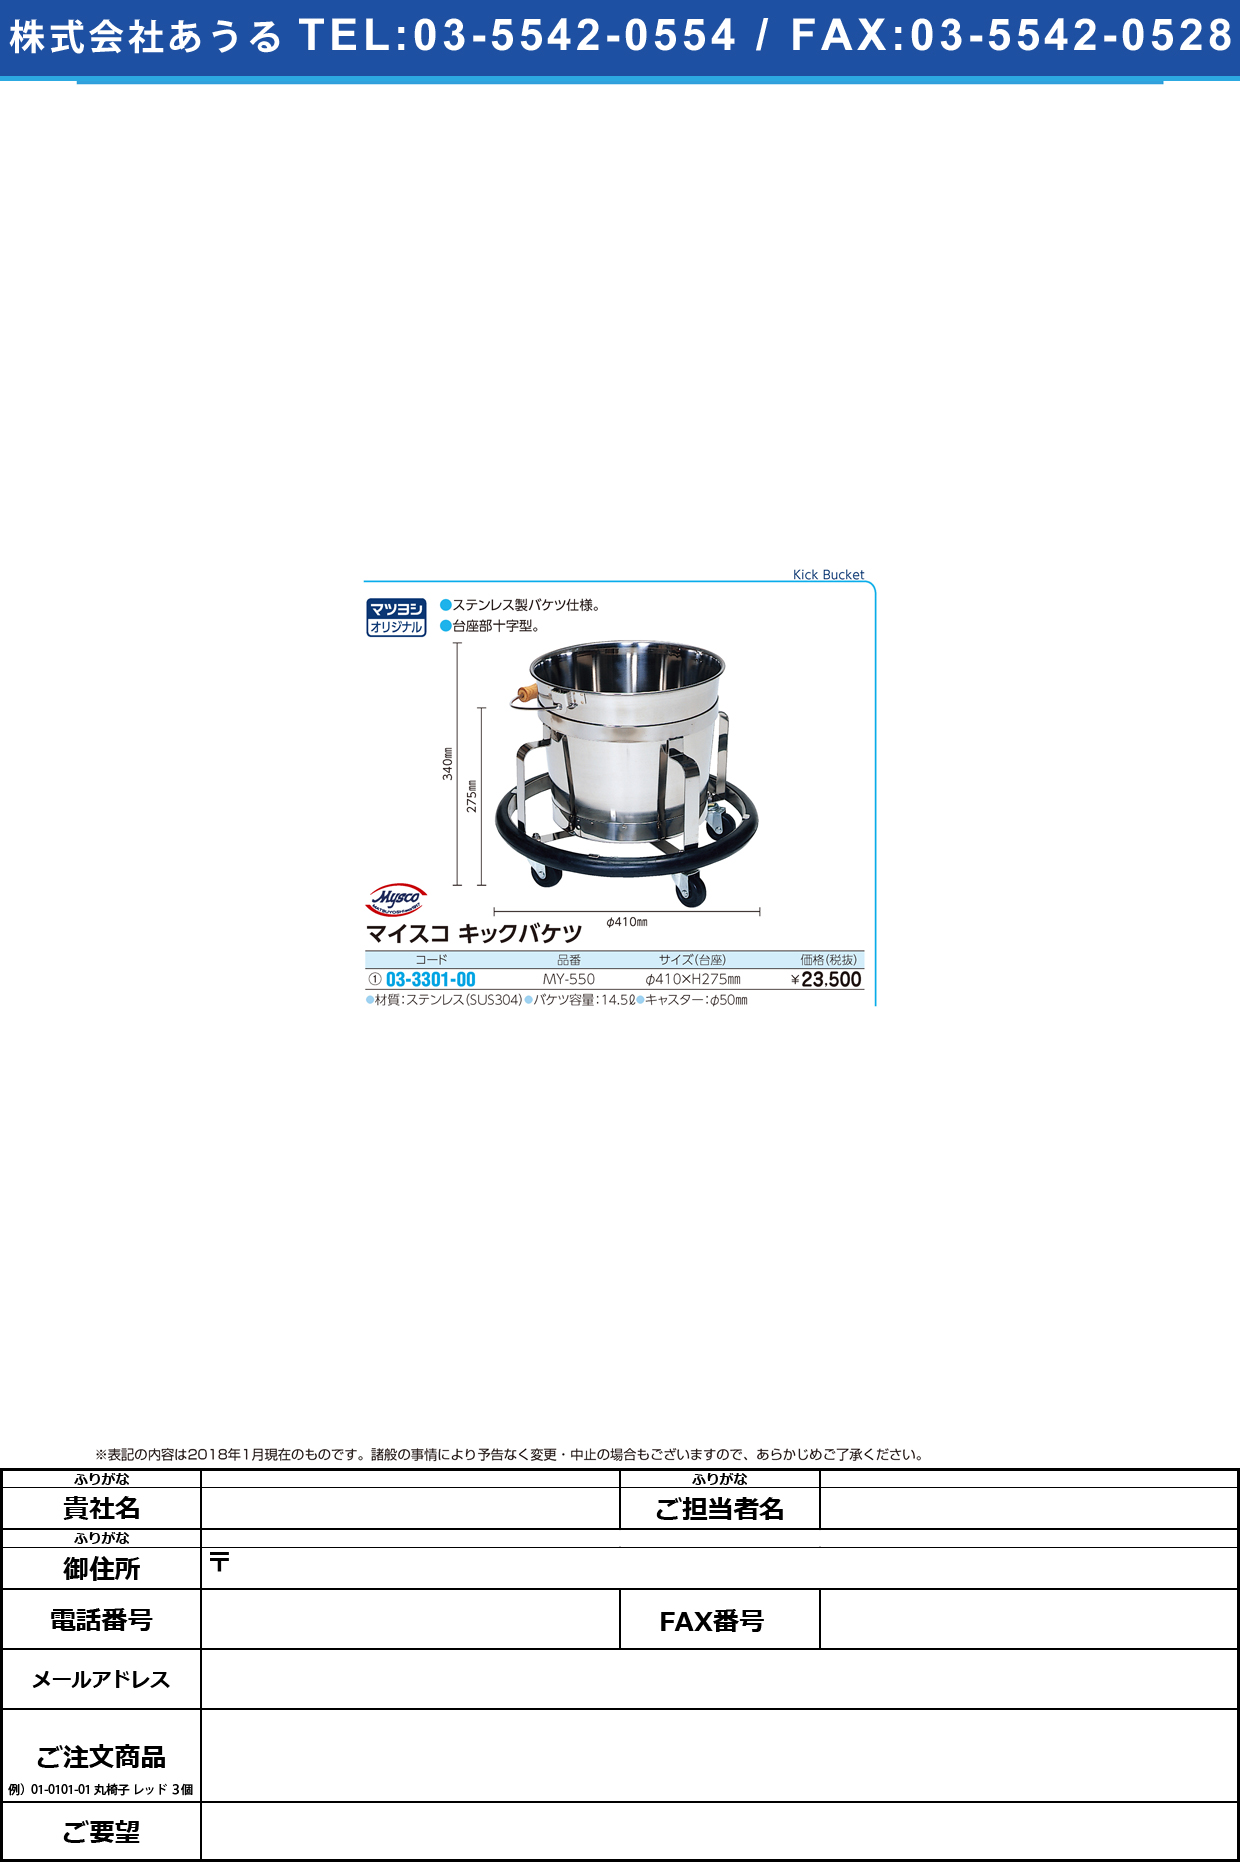 (03-3301-00)マイスコキックバケツ MY-550(ｽﾃﾝﾚｽﾊﾞｹﾂ14.5 ﾏｲｽｺｷｯｸﾊﾞｹﾂ【1台単位】【2019年カタログ商品】